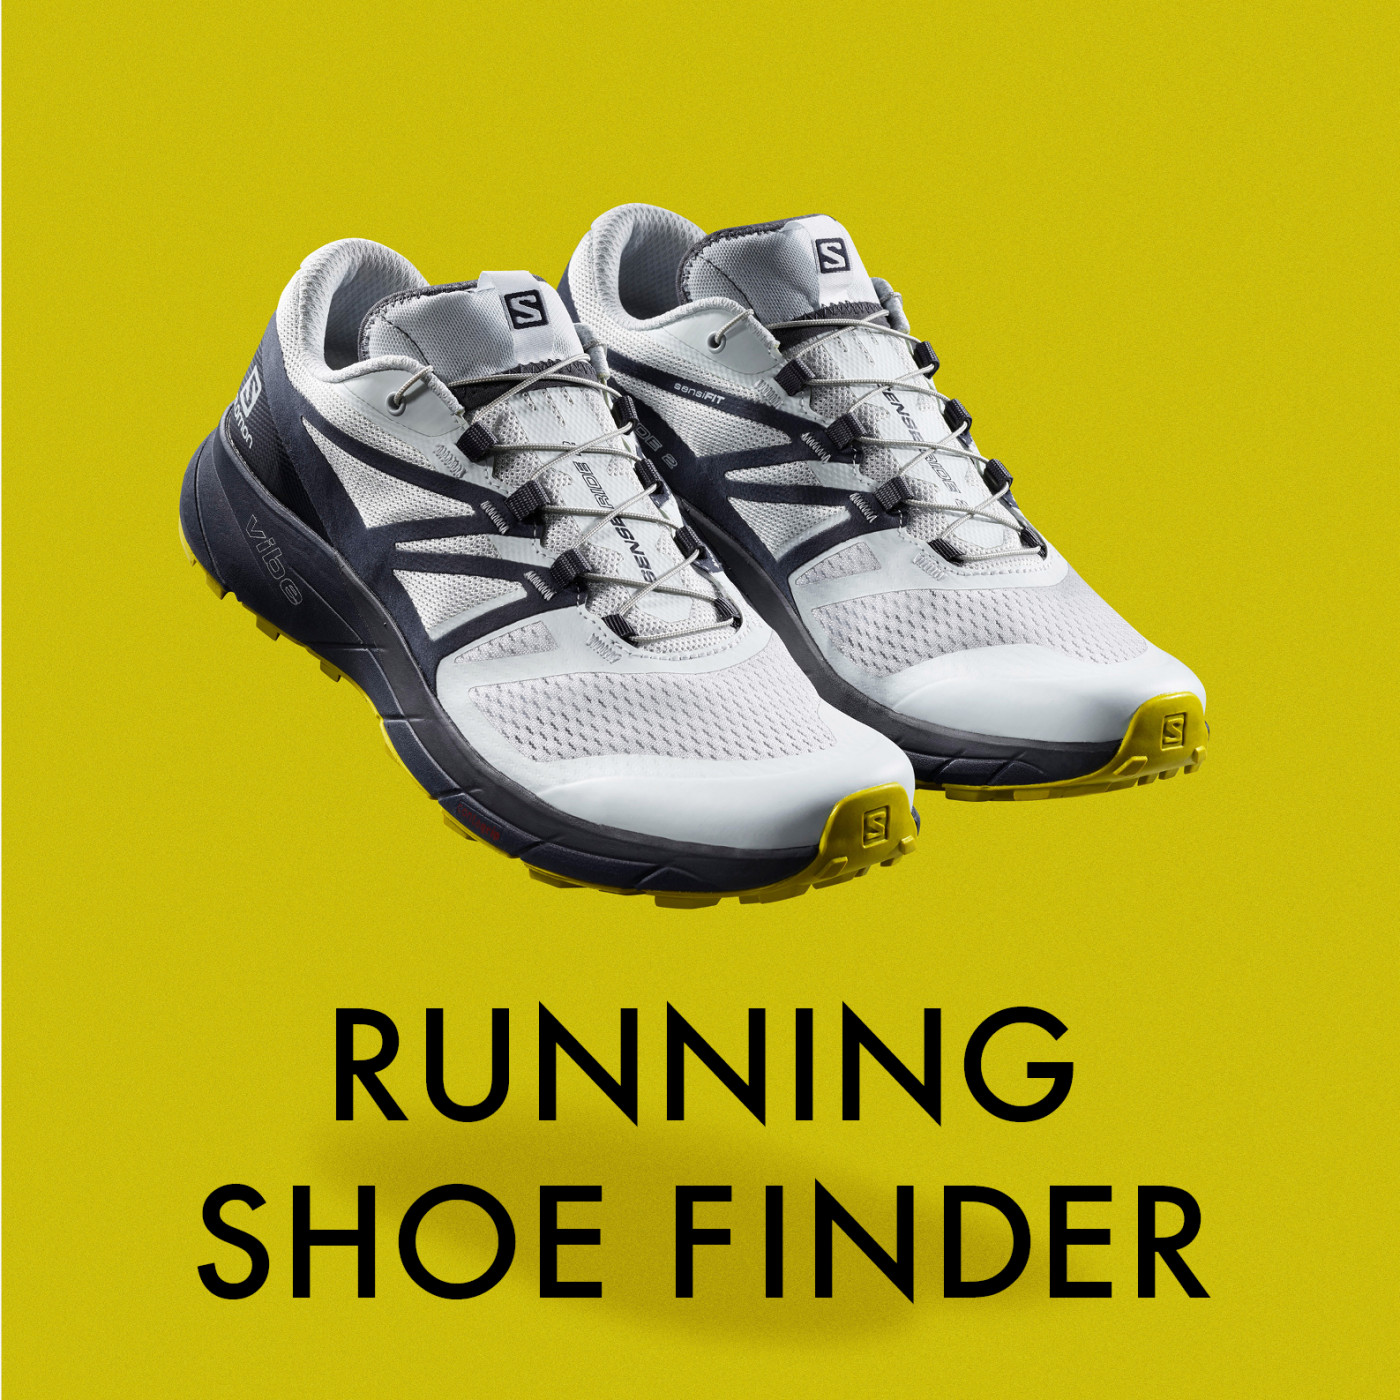 Salomon running shoe finder 